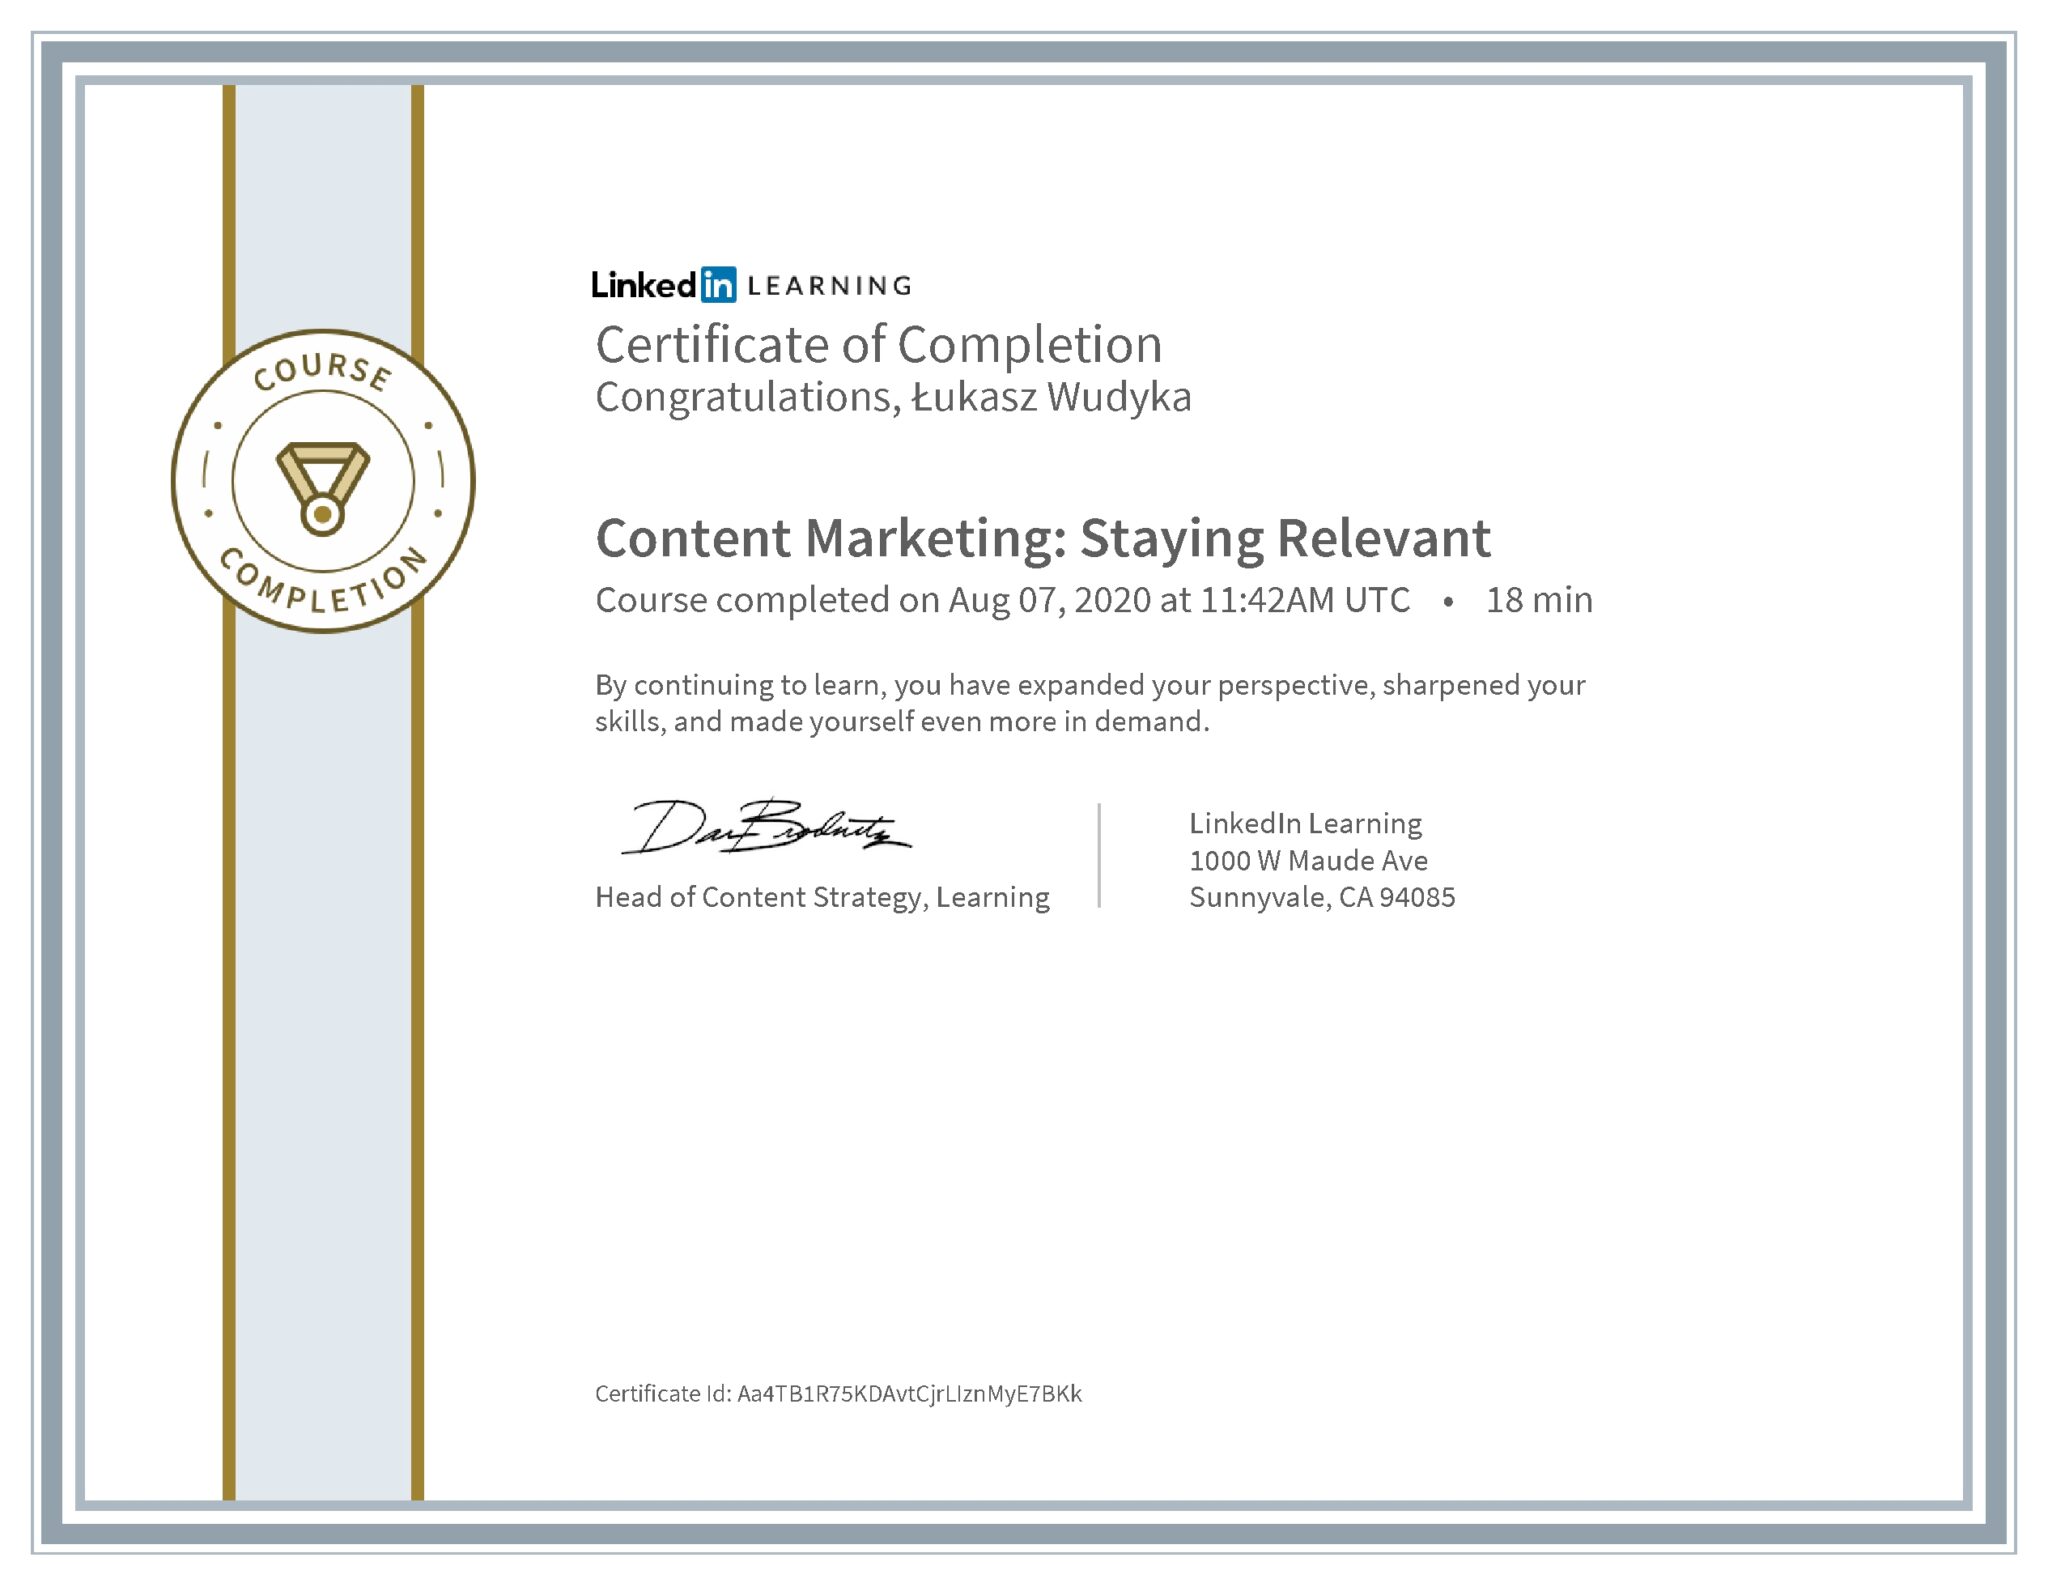 Łukasz Wudyka certyfikat LinkedIn Content Marketing: Staying Relevant